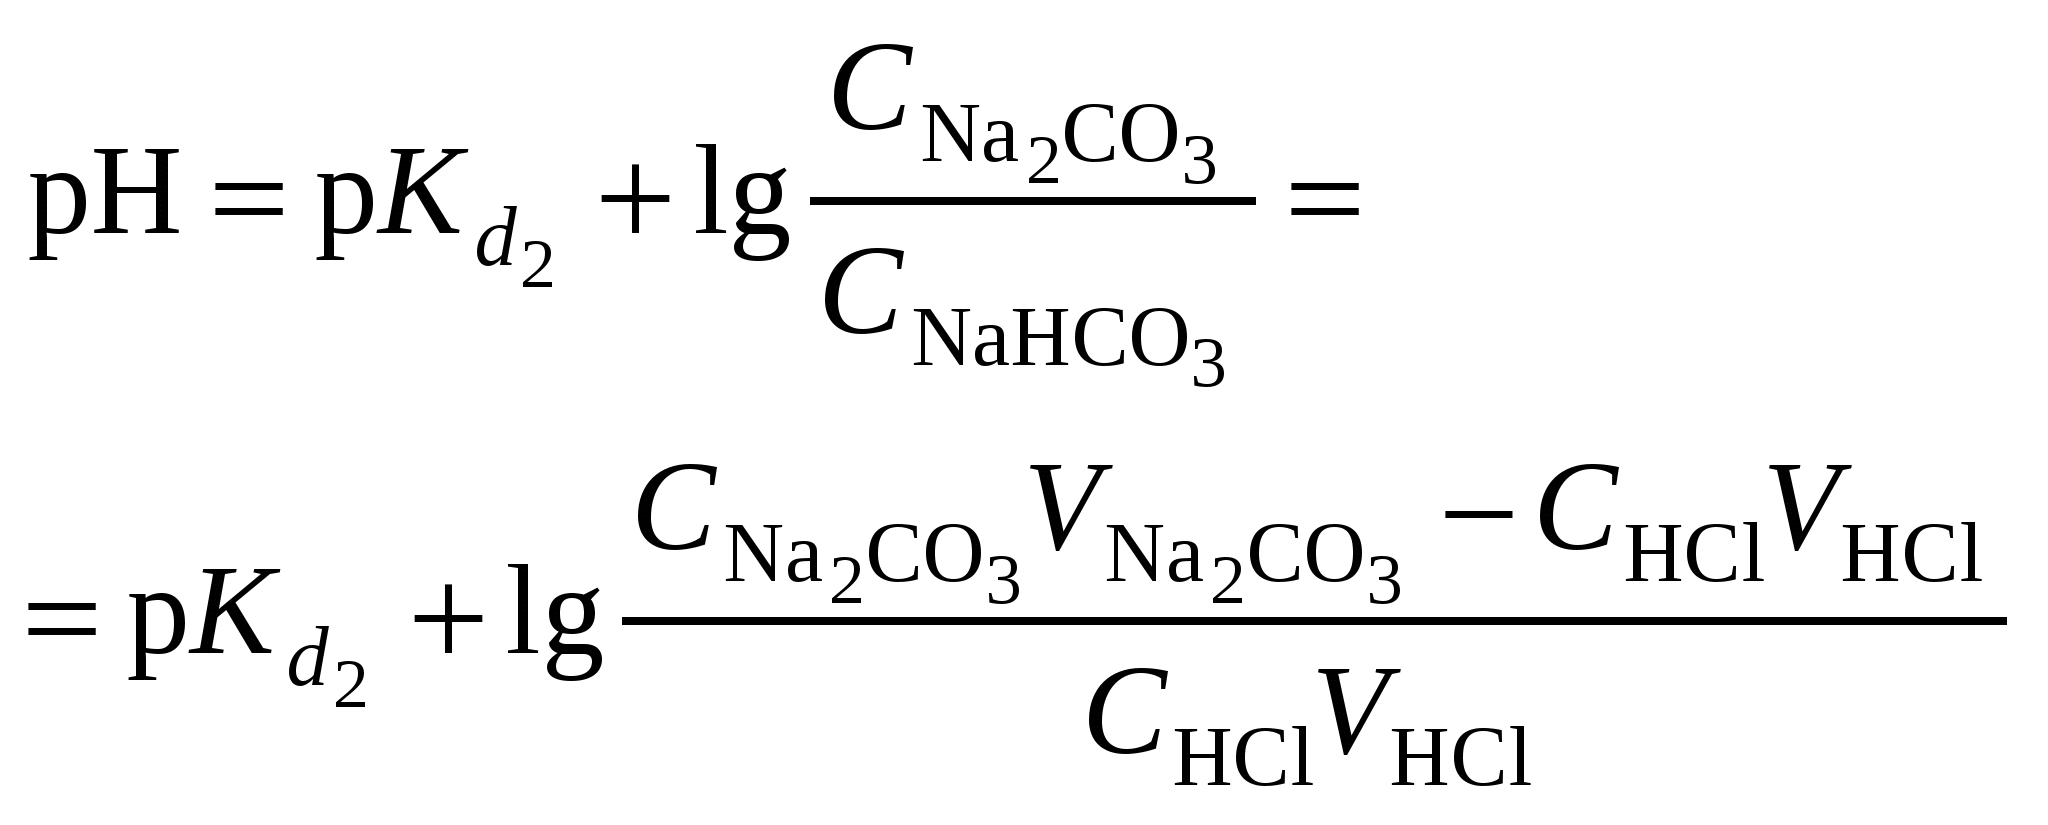 Nahco3 mg no3 2. Naso3 электролиз раствора. Буферный раствор na2co3. Nahco3 электролиз. Титрование буферного раствора.